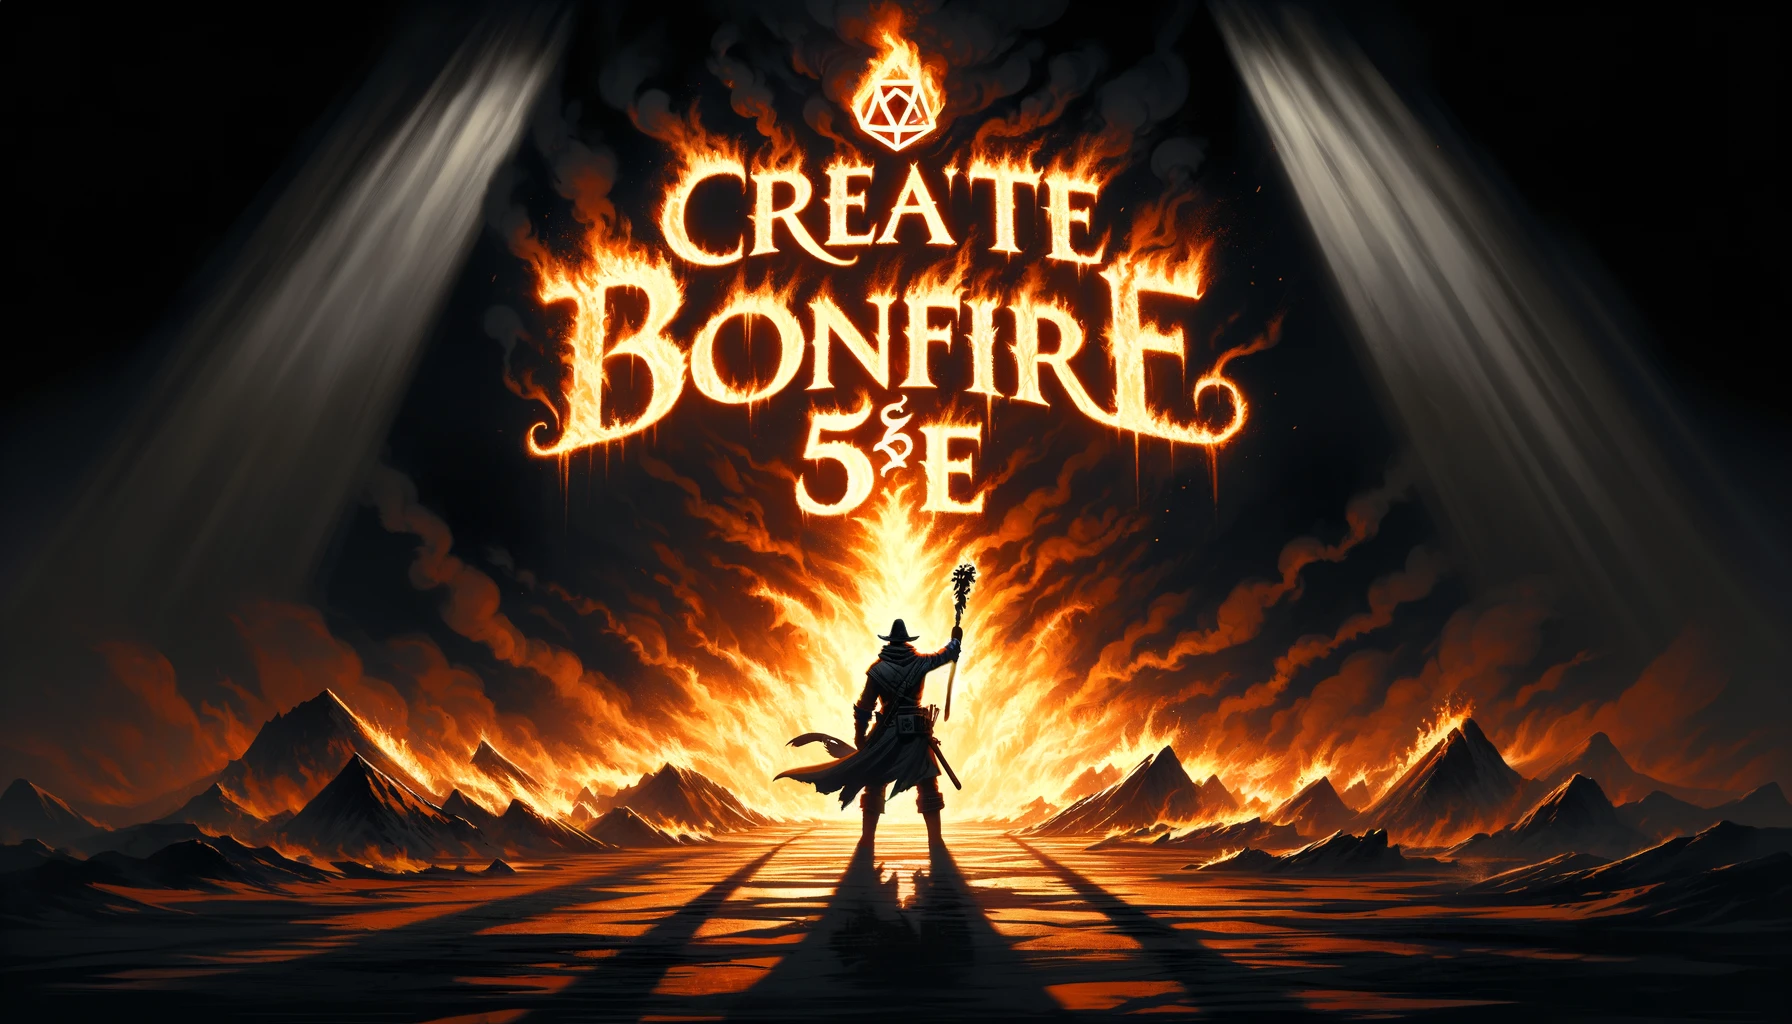 Create Bonfire 5E: D&D Spell Description and Usage Guide